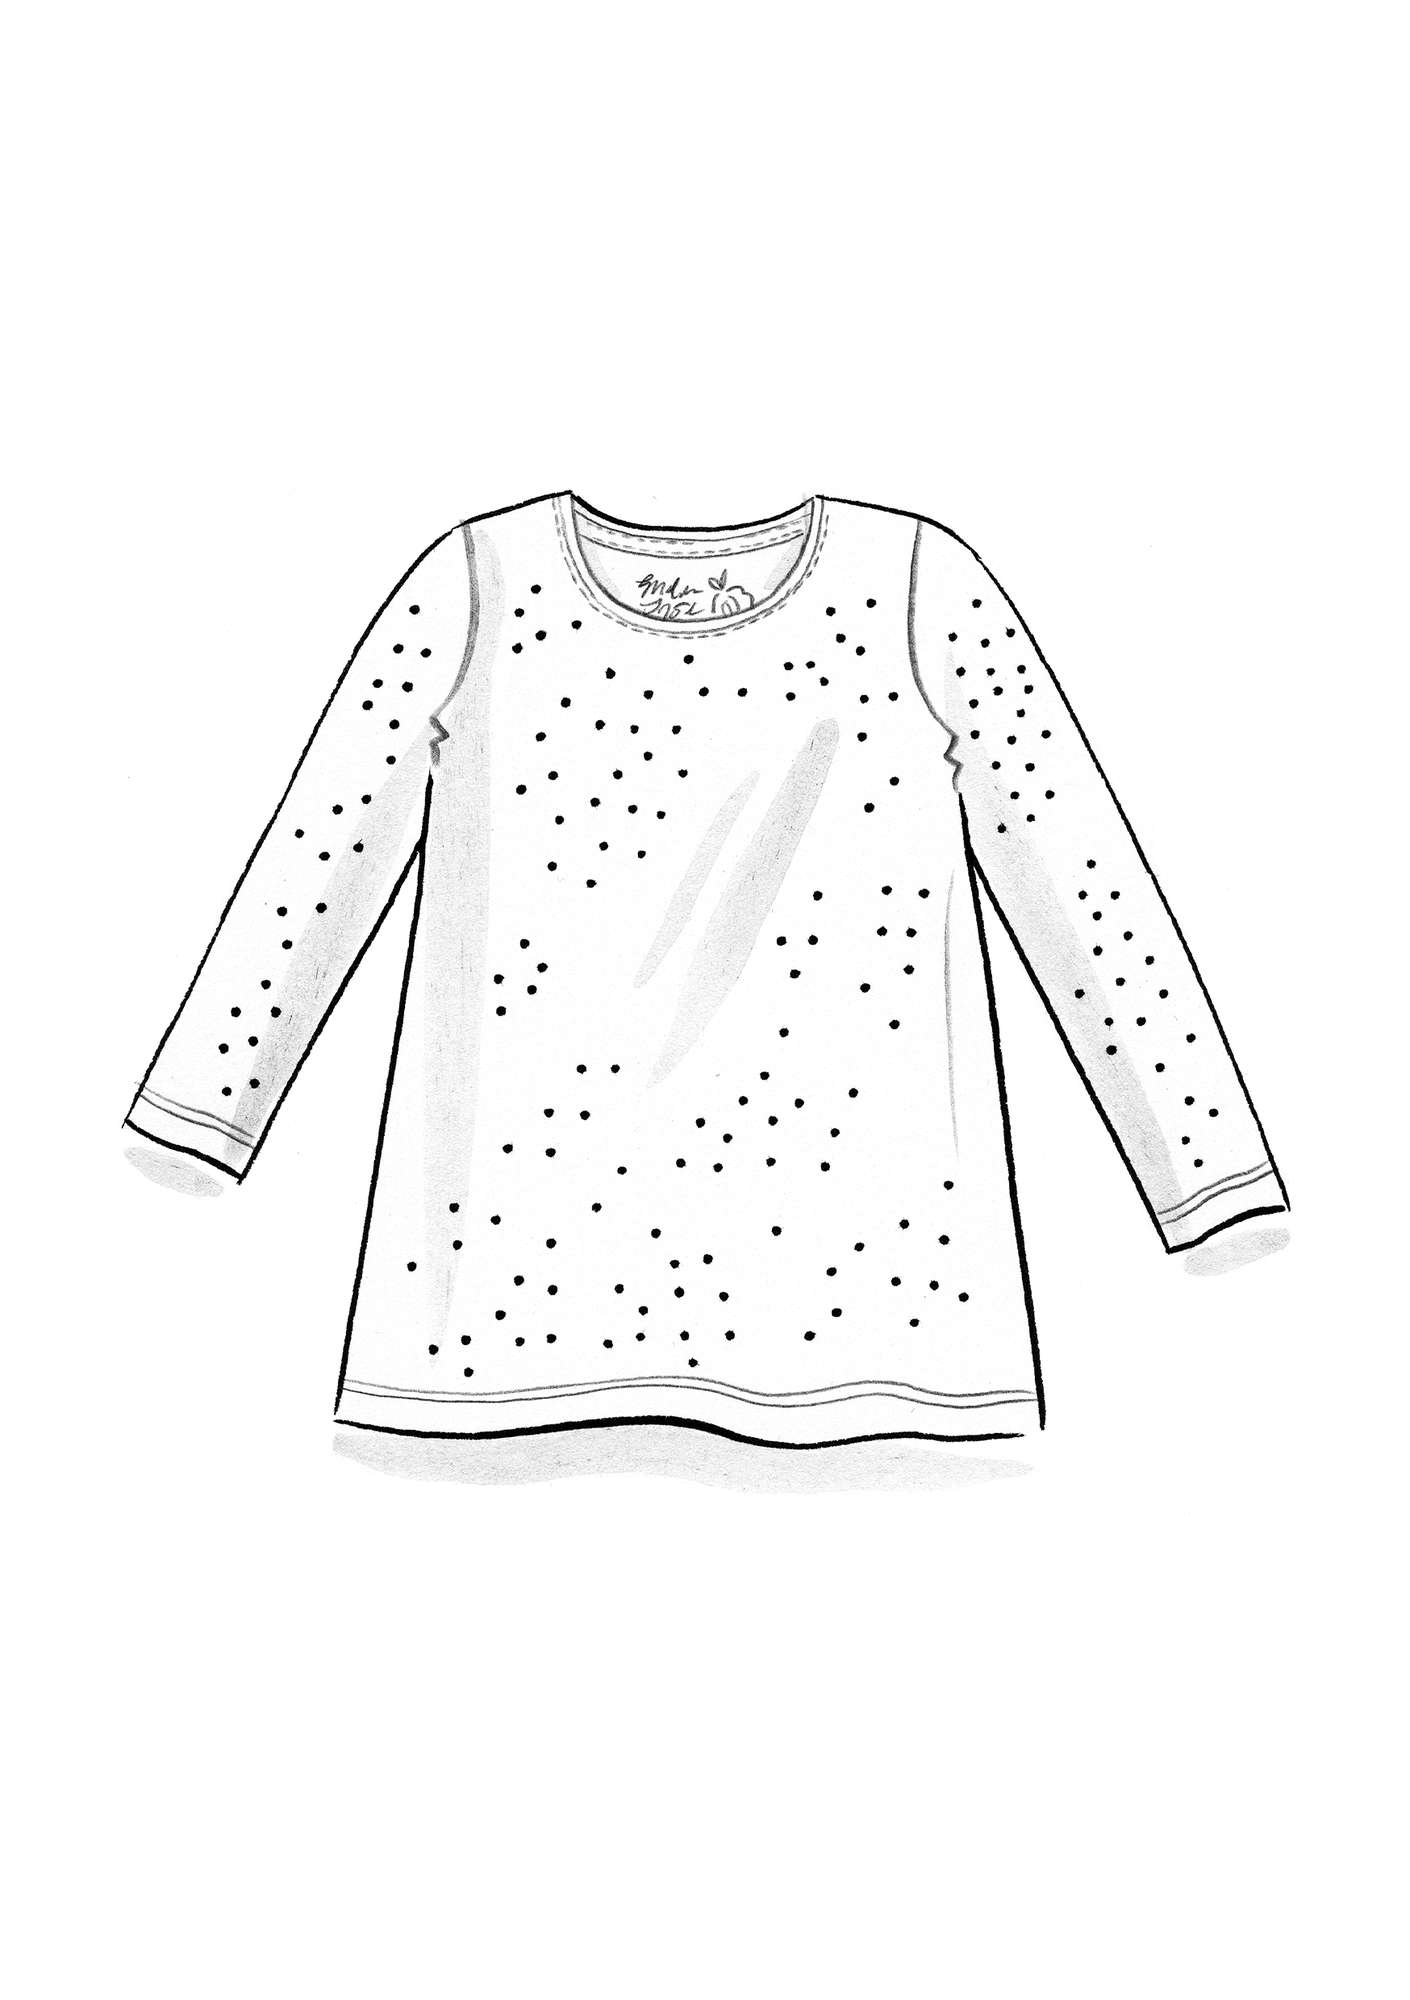 Shirt „Pytte“ aus Öko-Baumwolle/Modal/Elasthan ungebleicht-gemustert